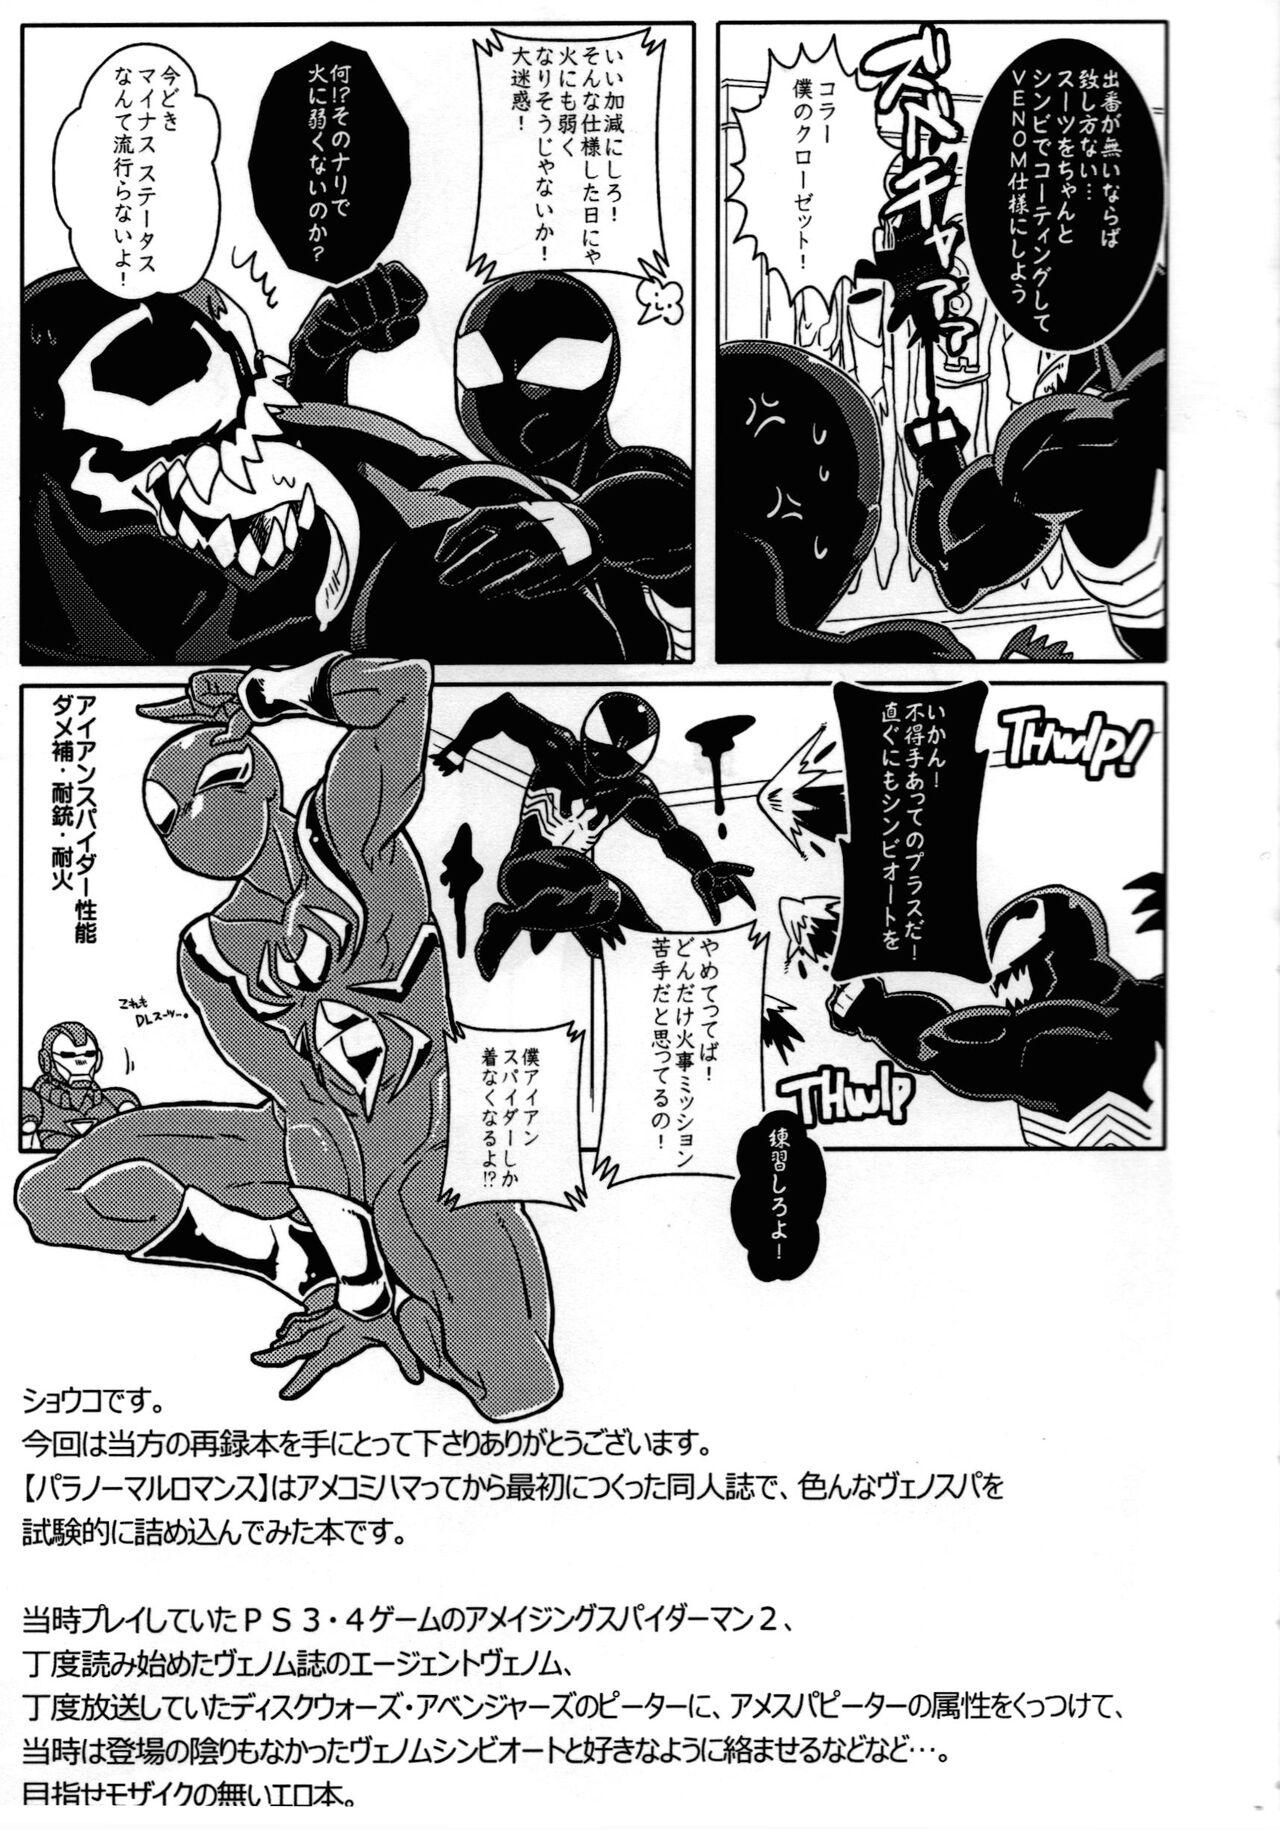 Home Spider‐Man REMIX - Spider man High Heels - Page 7